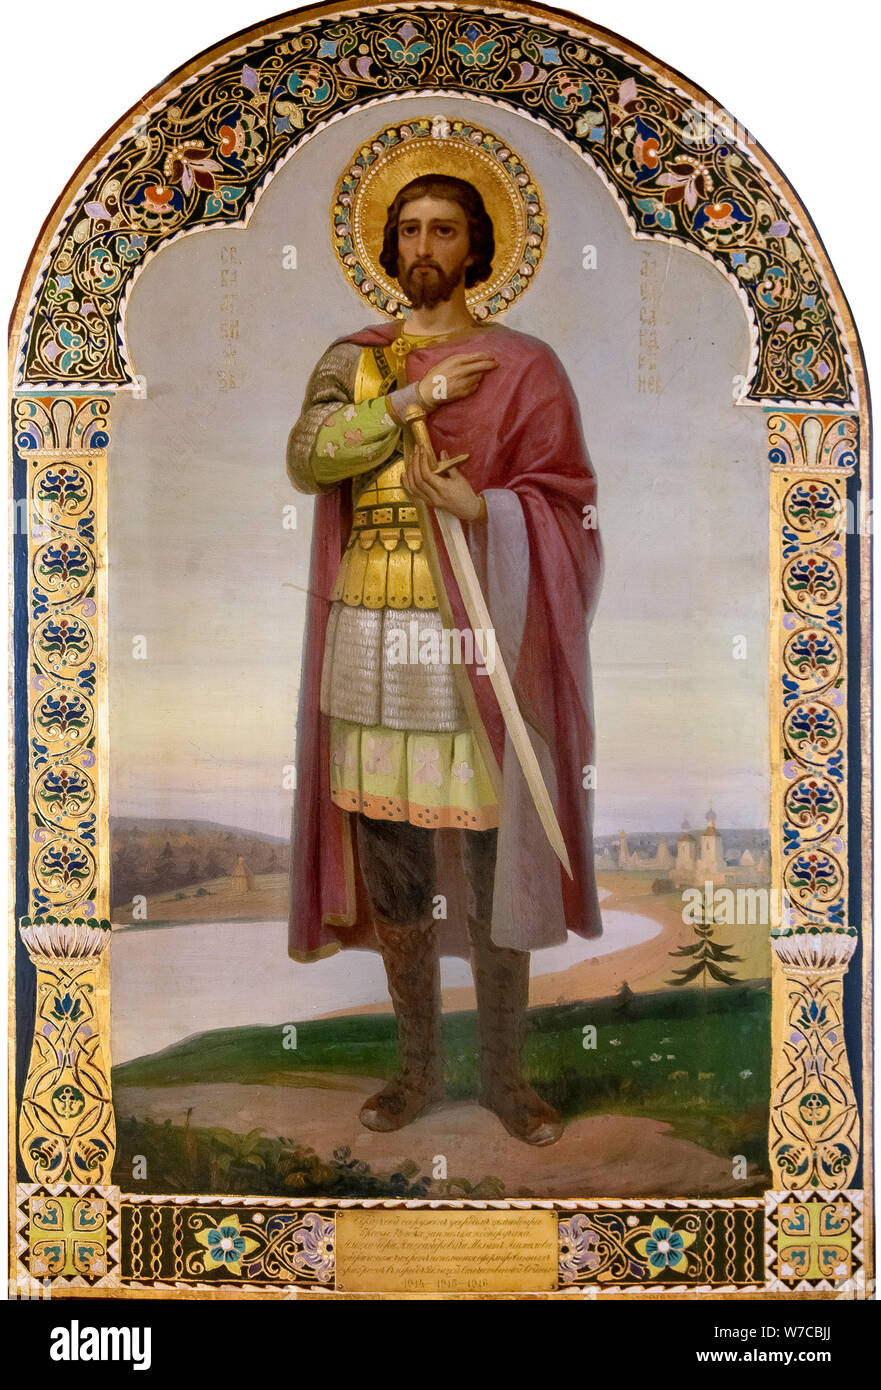 Saint Alexander Nevsky. Stock Photo